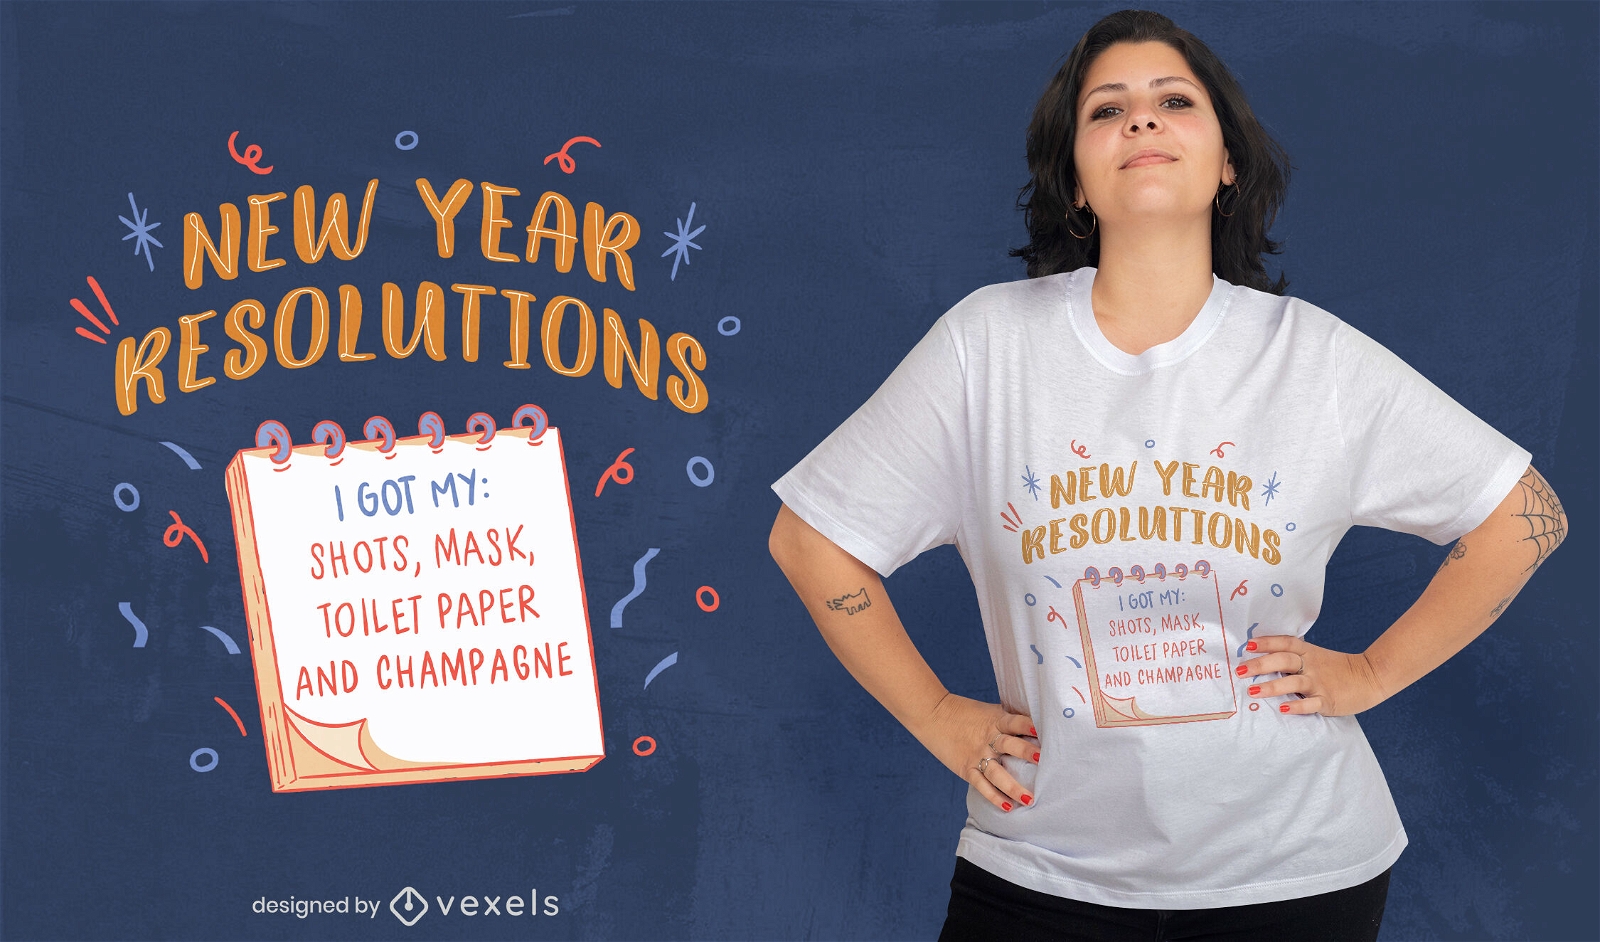 Divertido diseño de camiseta de resoluciones de año nuevo.